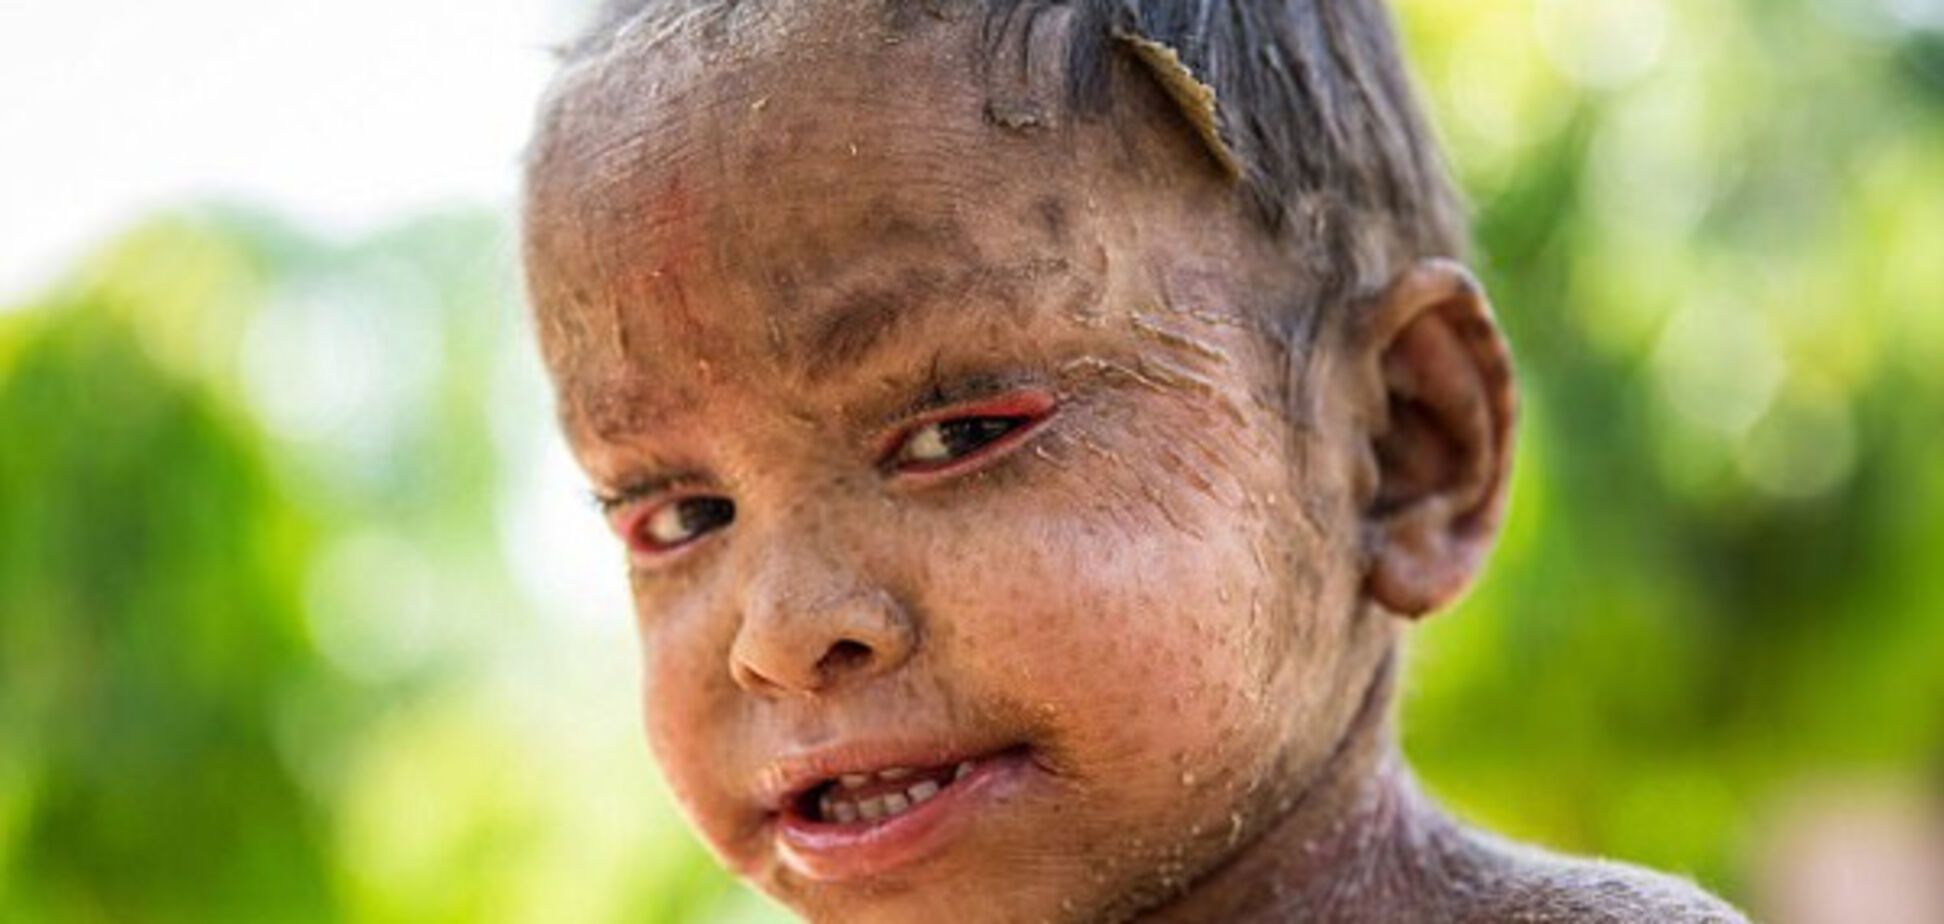 Двухлетняя девочка страдает от редкого заболевания, из-за которого ее кожа похожа на чешую ящерицы